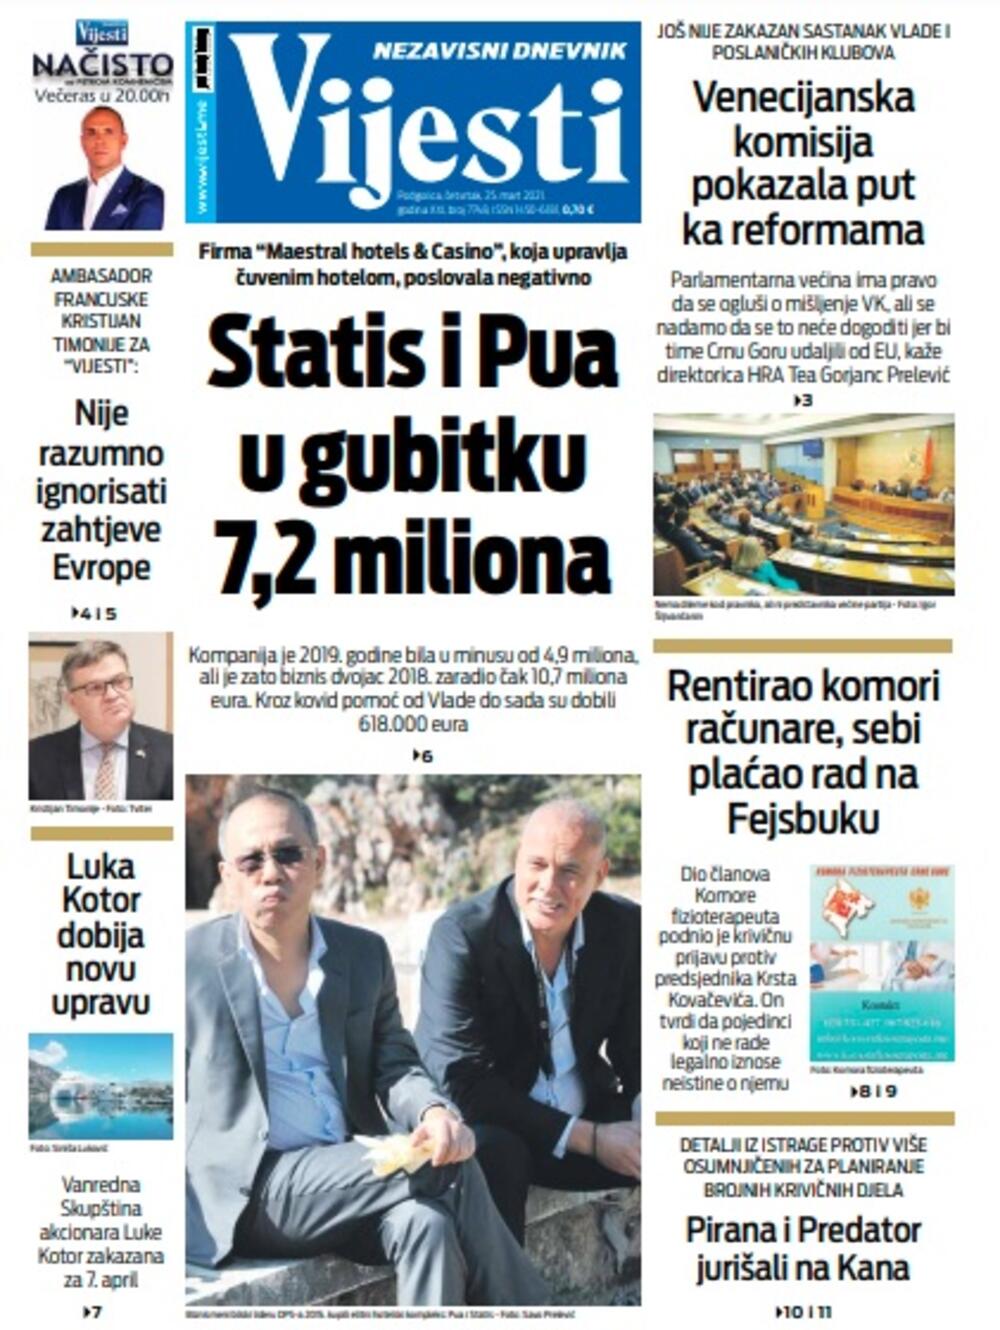 Naslovna strana "Vijesti" za četvrtak 25. mart 2021. godine, Foto: Vijesti